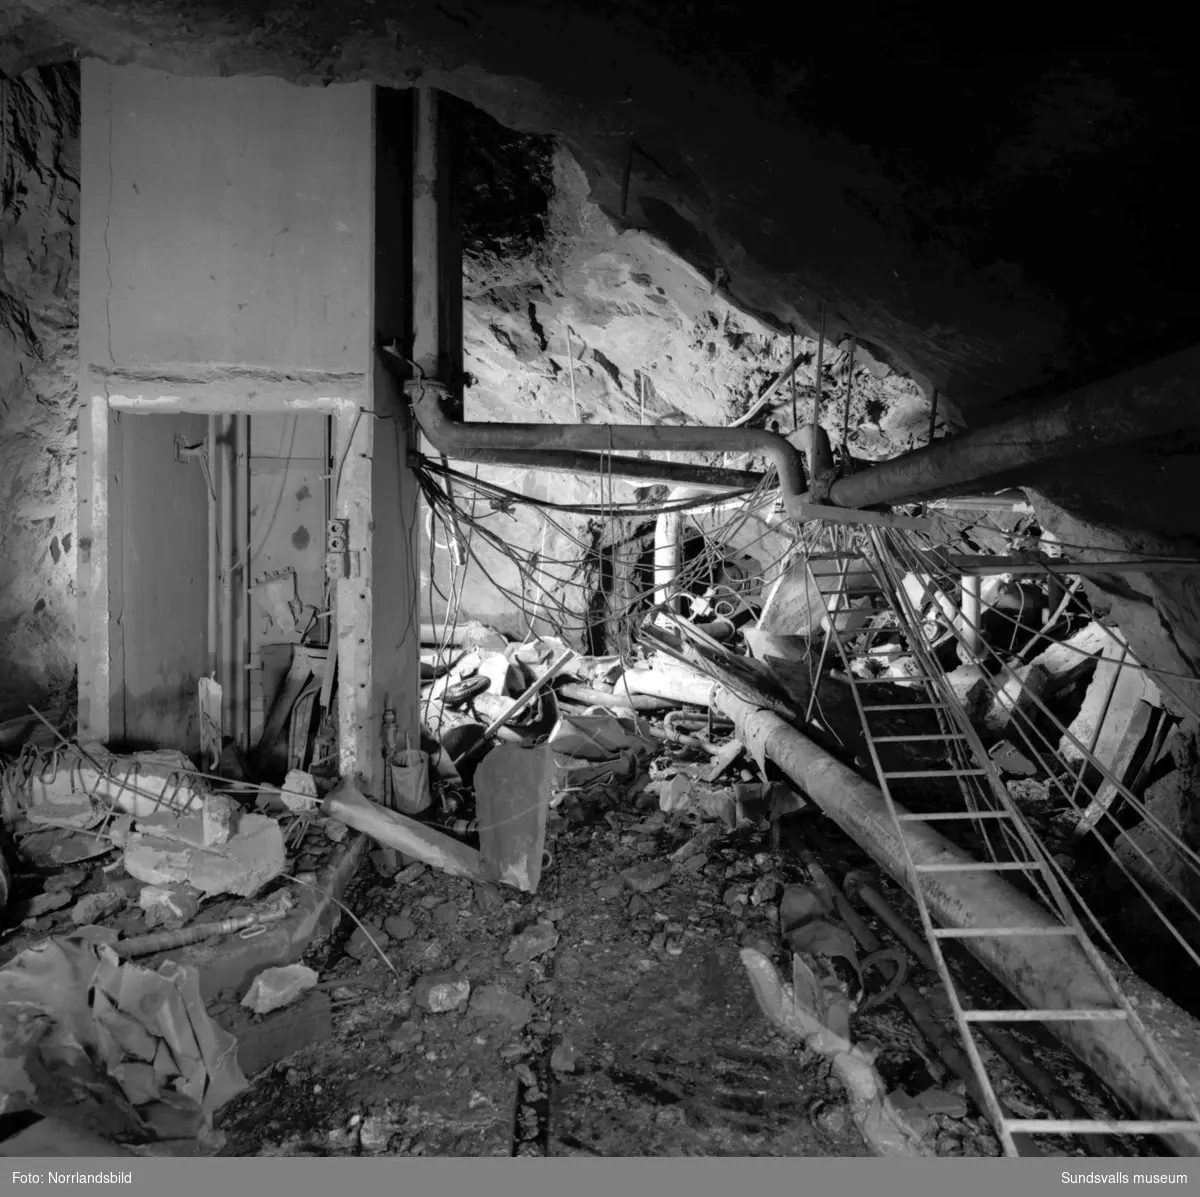 En kraftig bensingasexplosion inträffade i slutet av mars 1957 i bergrumsanläggningen vid Vindskärsvarv. Första bilden visar kontoret som totalförstördes. Föreståndare Paul Boström som befann sig i byggnaden lyckades rädda sig ut genom fönstret. Räddningsmanskapets jobb var riskfyllt och man befarade länge att en ännu större katastrof skulle kunna inträffa på grund av läckande bensin och bensingaser.